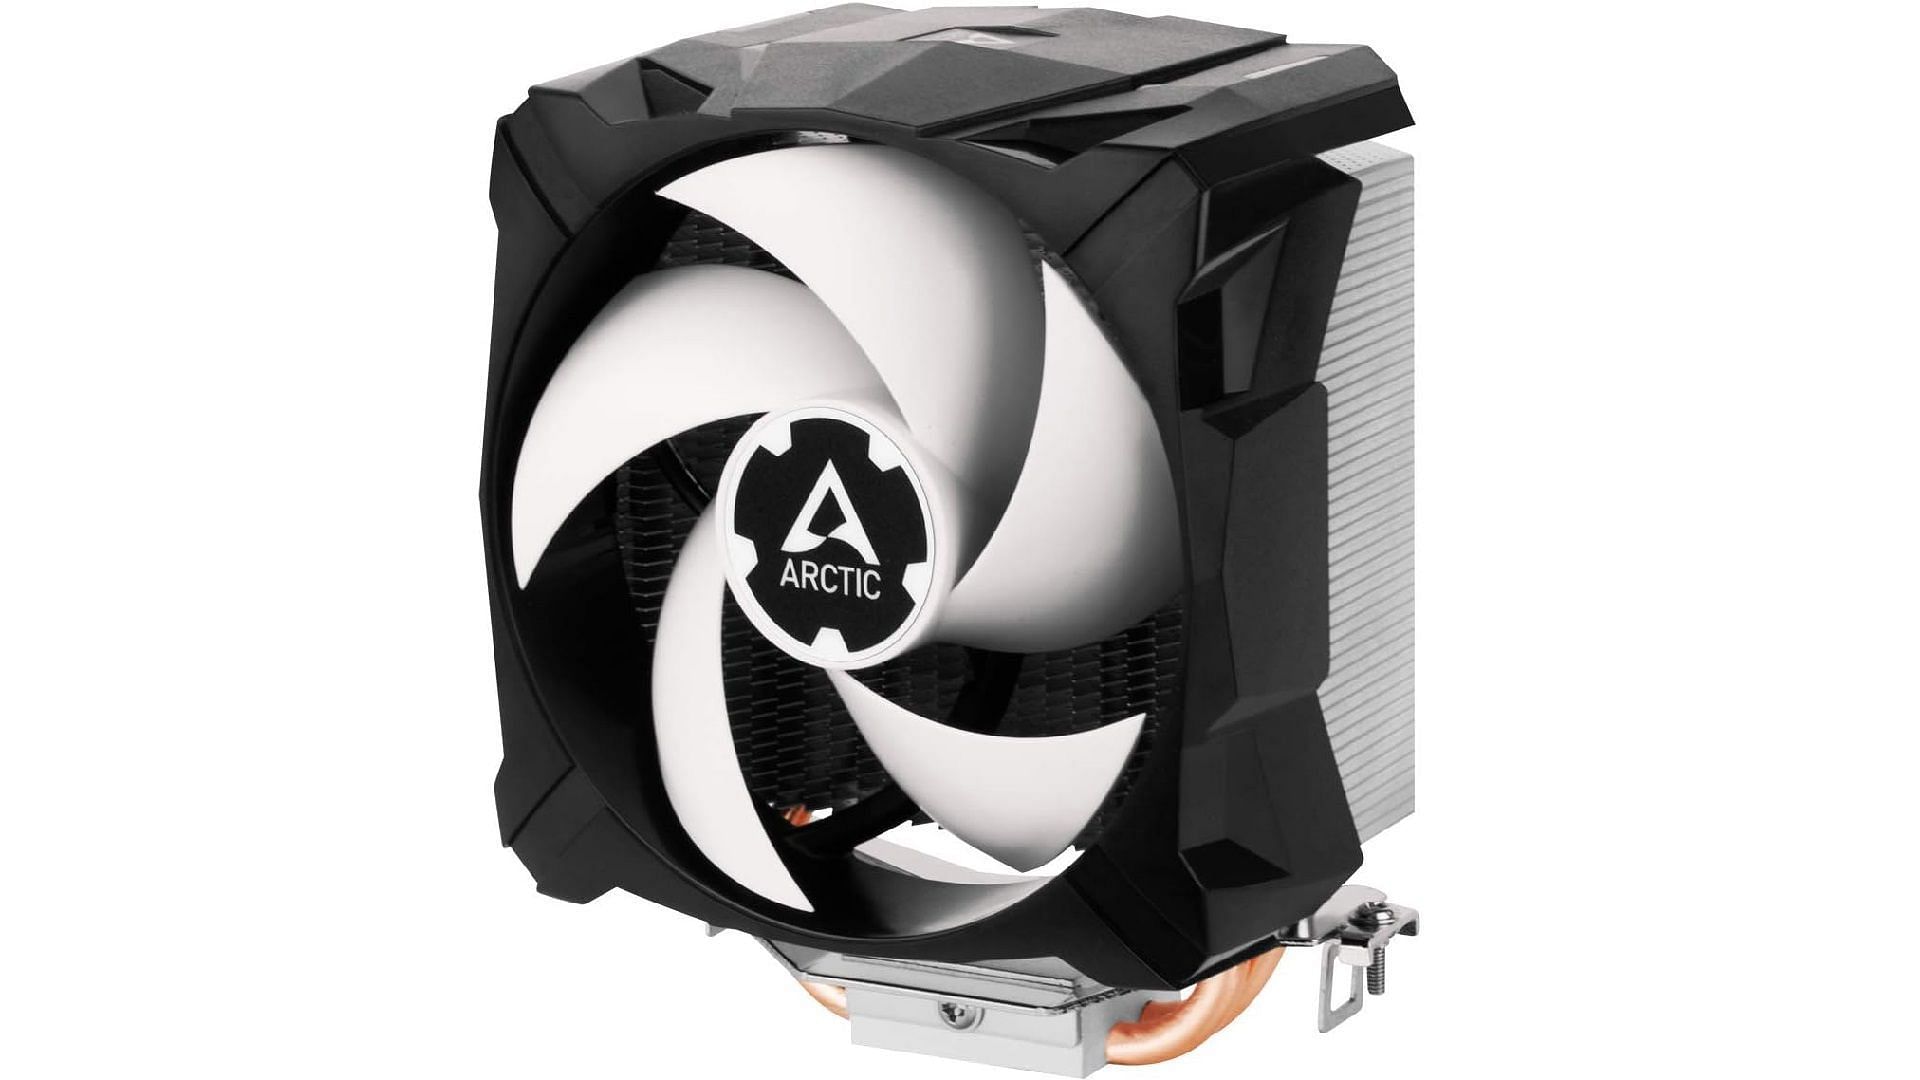 ARCTIC Freezer 7 X (Image via ARCTIC/Amazon)